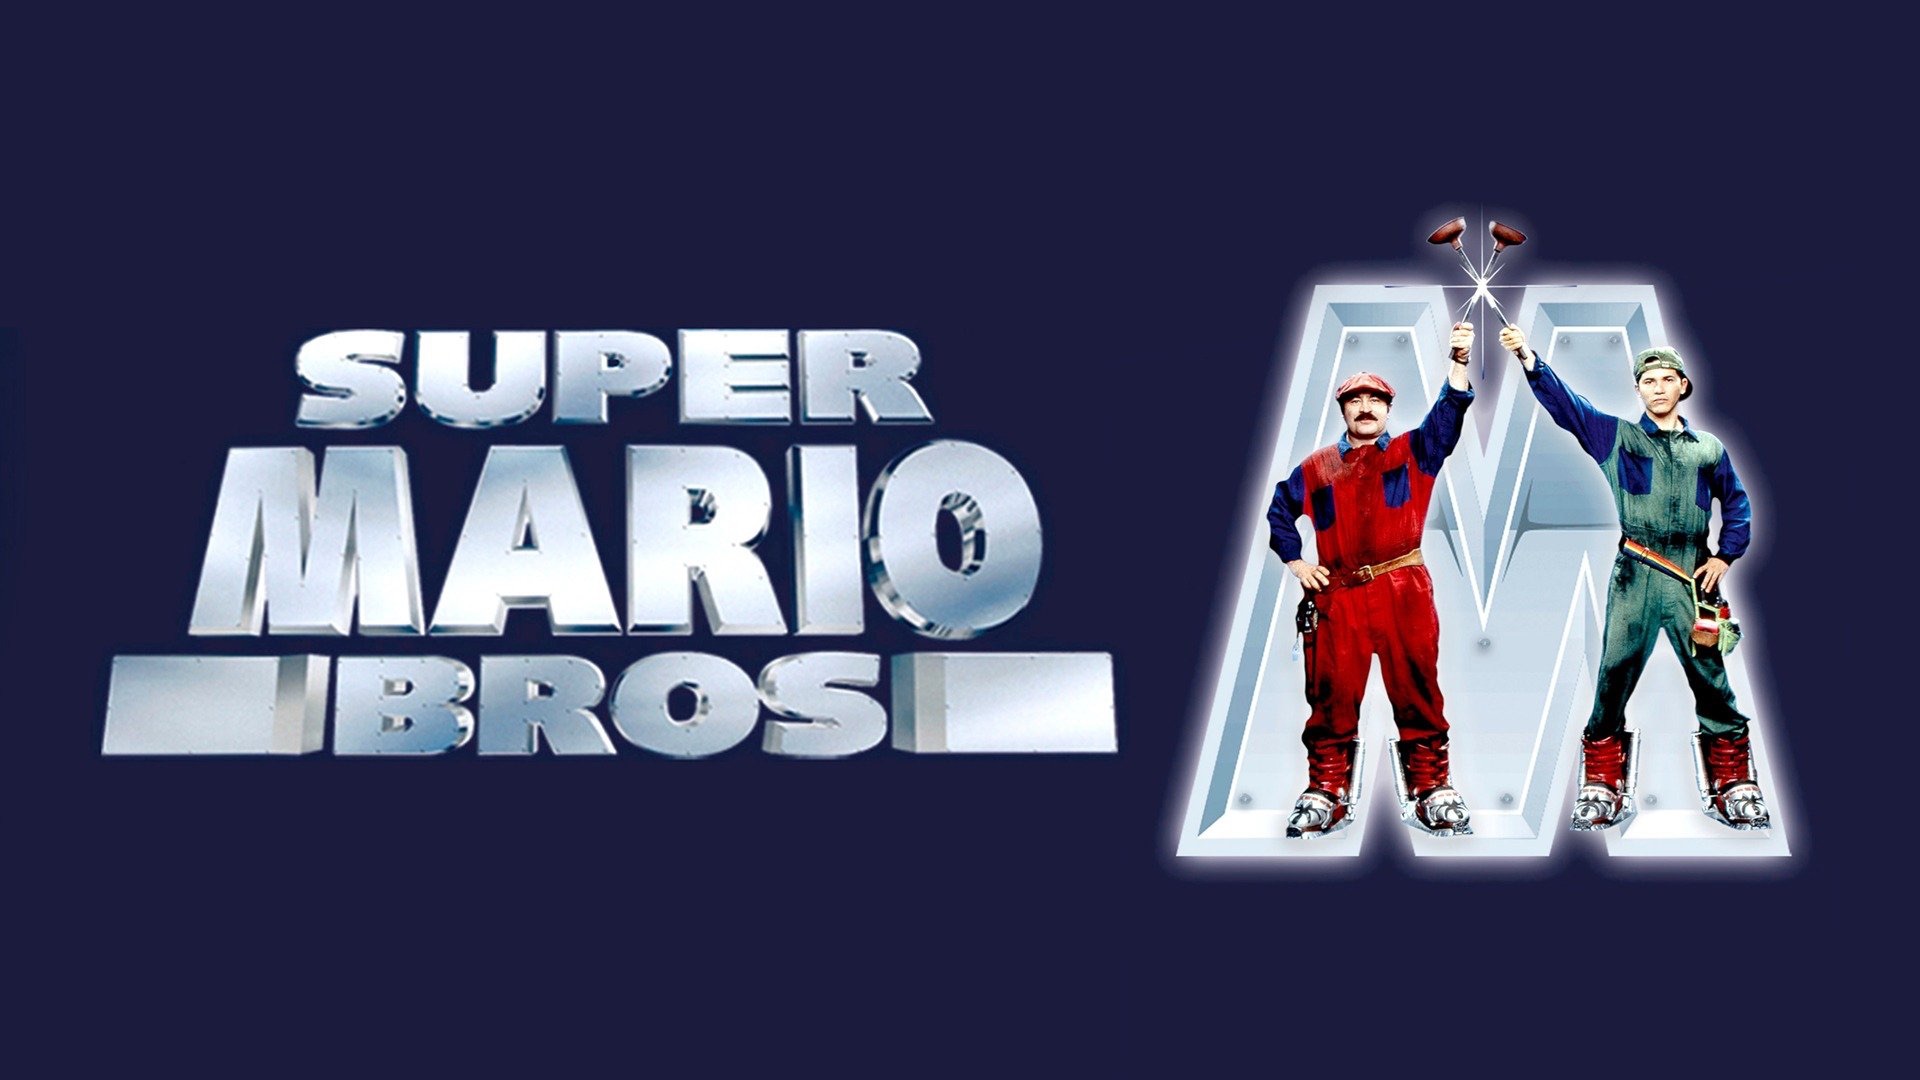 Скачать обои Супербратья Марио на телефон бесплатно